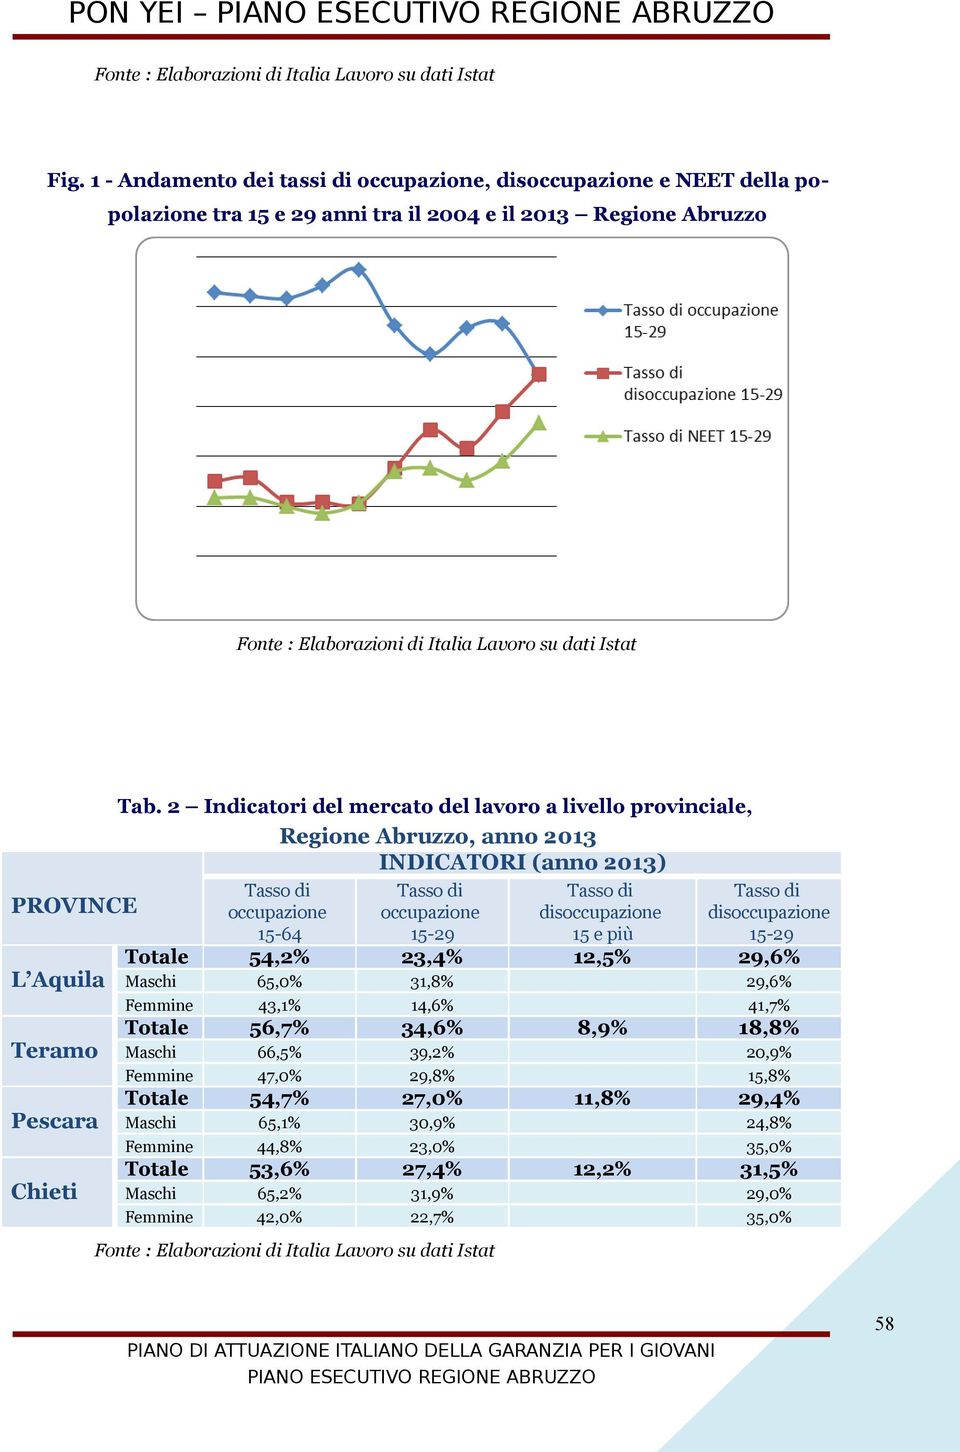 2 Indicatori del mercato del lavoro a livello provinciale, Regione Abruzzo, anno 2013 INDICATORI (anno 2013) Tasso di occupazione 15-64 Tasso di occupazione 15-29 Tasso di disoccupazione 15 e più